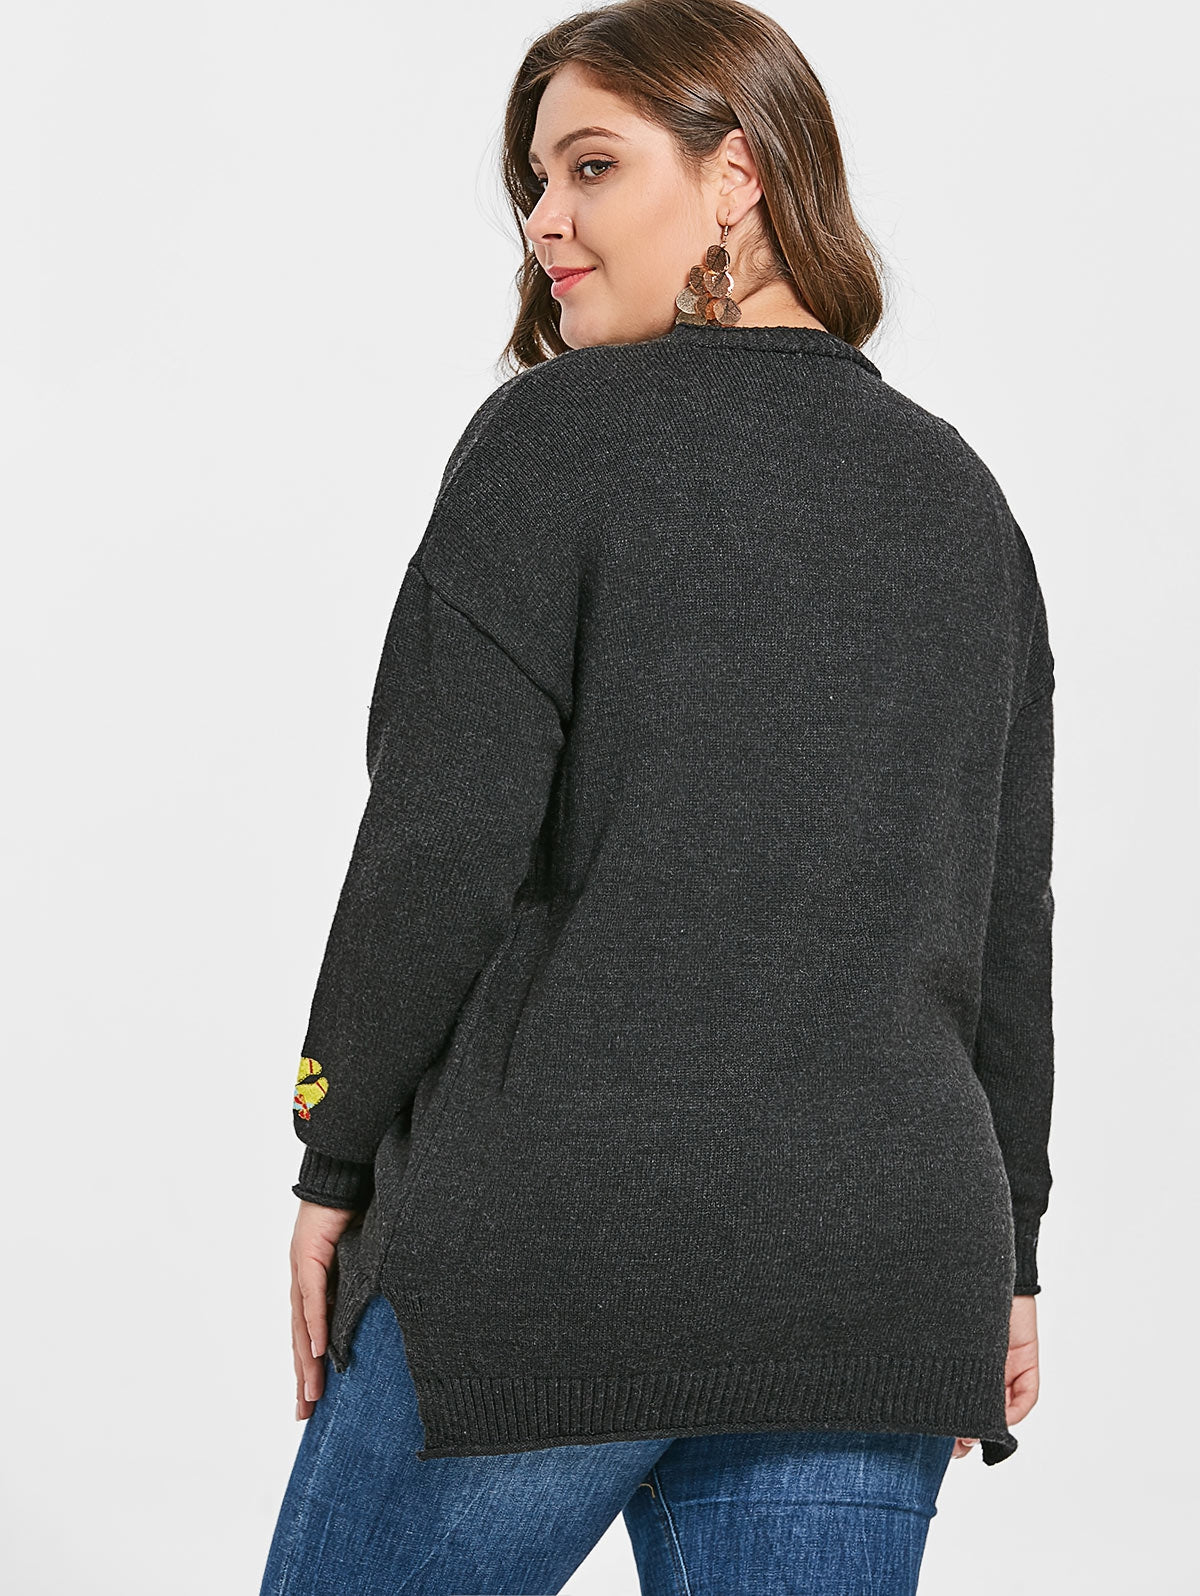 Plus Size Embroidery Drop Shoulder Cardigan - DromedarShop.com Online Boutique